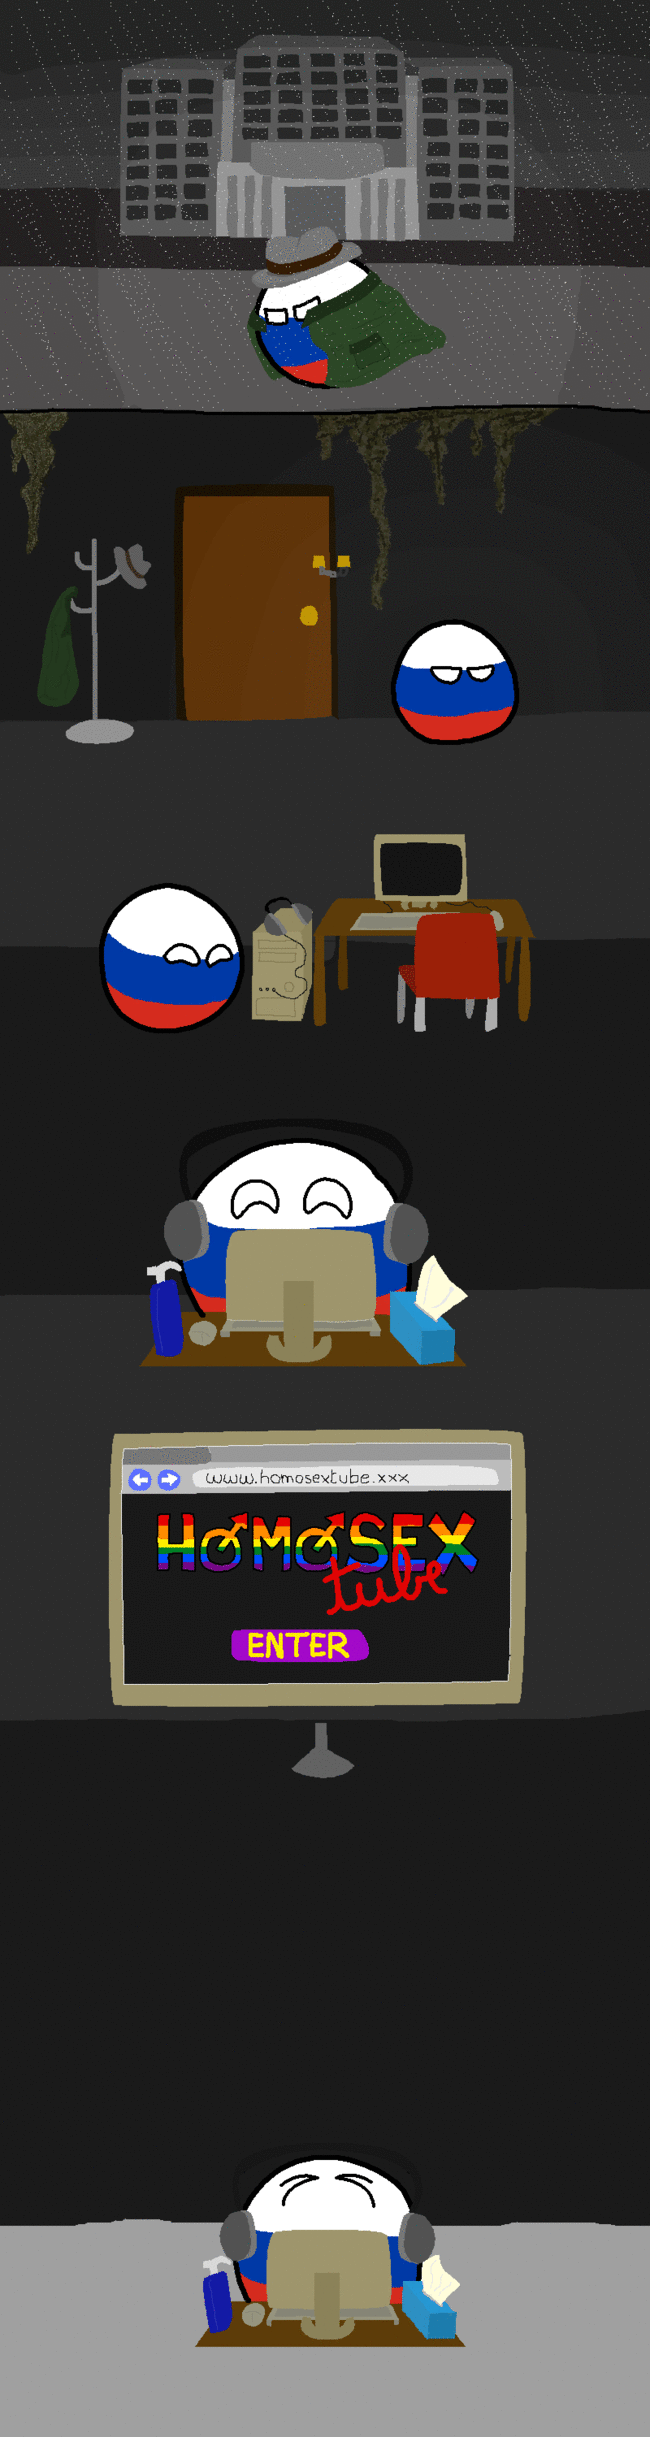 Venäjän synkkä salaisuus